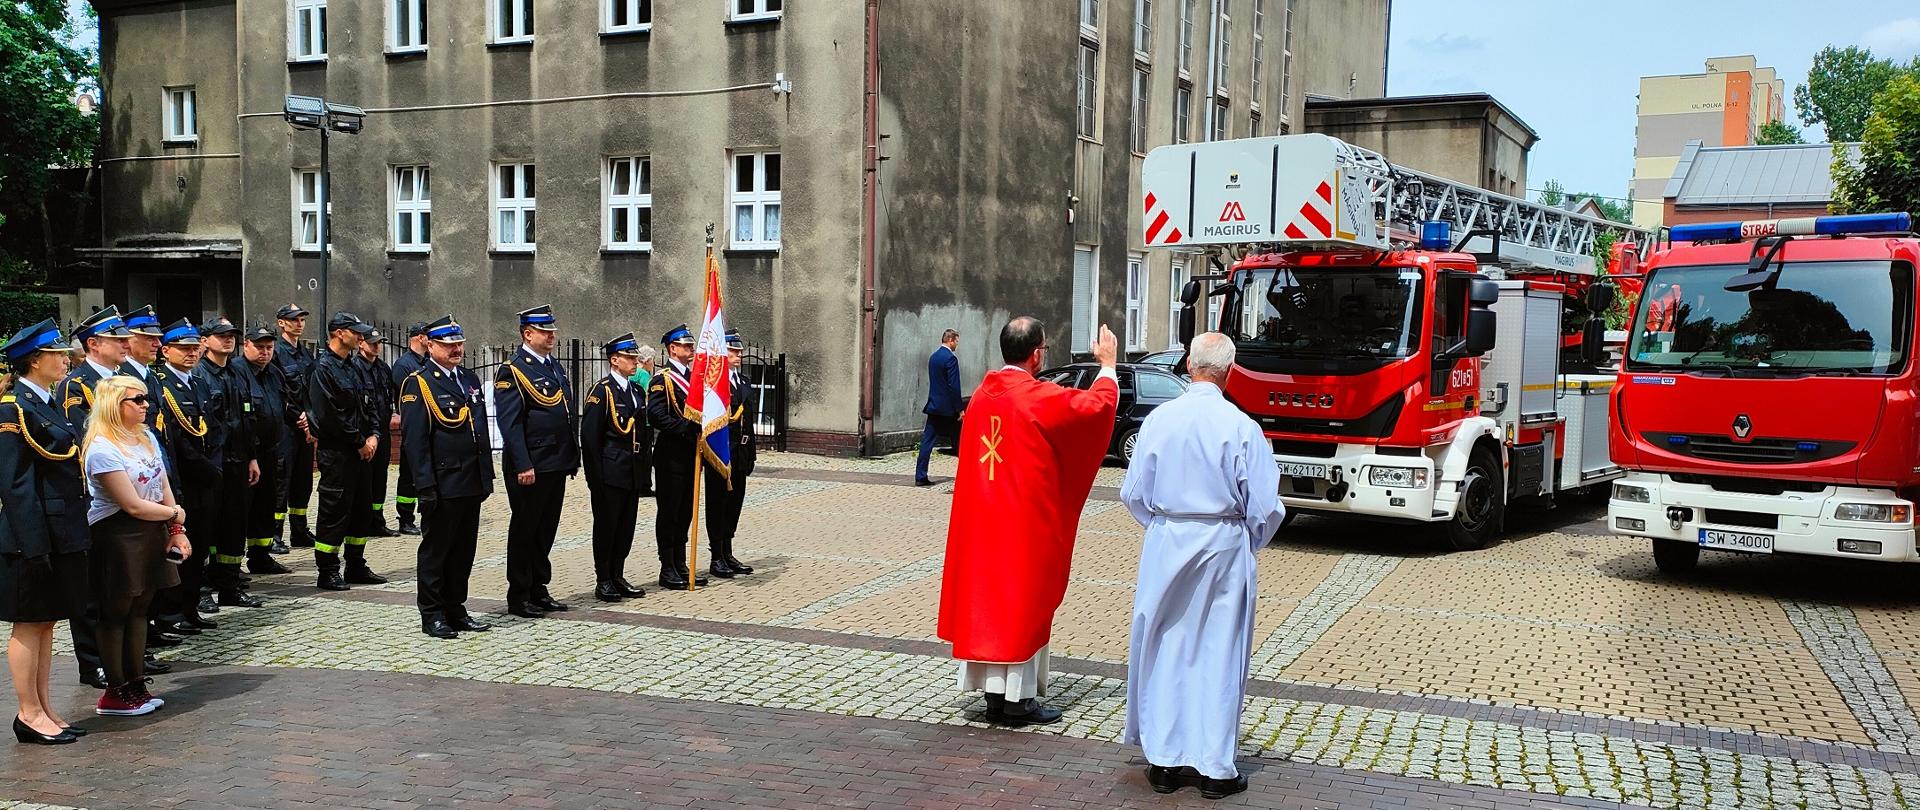 Zdjęcie przedstawia księdza, który odprawia poświęcenie pojazdów pożarniczych znajdujących się przed budynkiem kościoła.